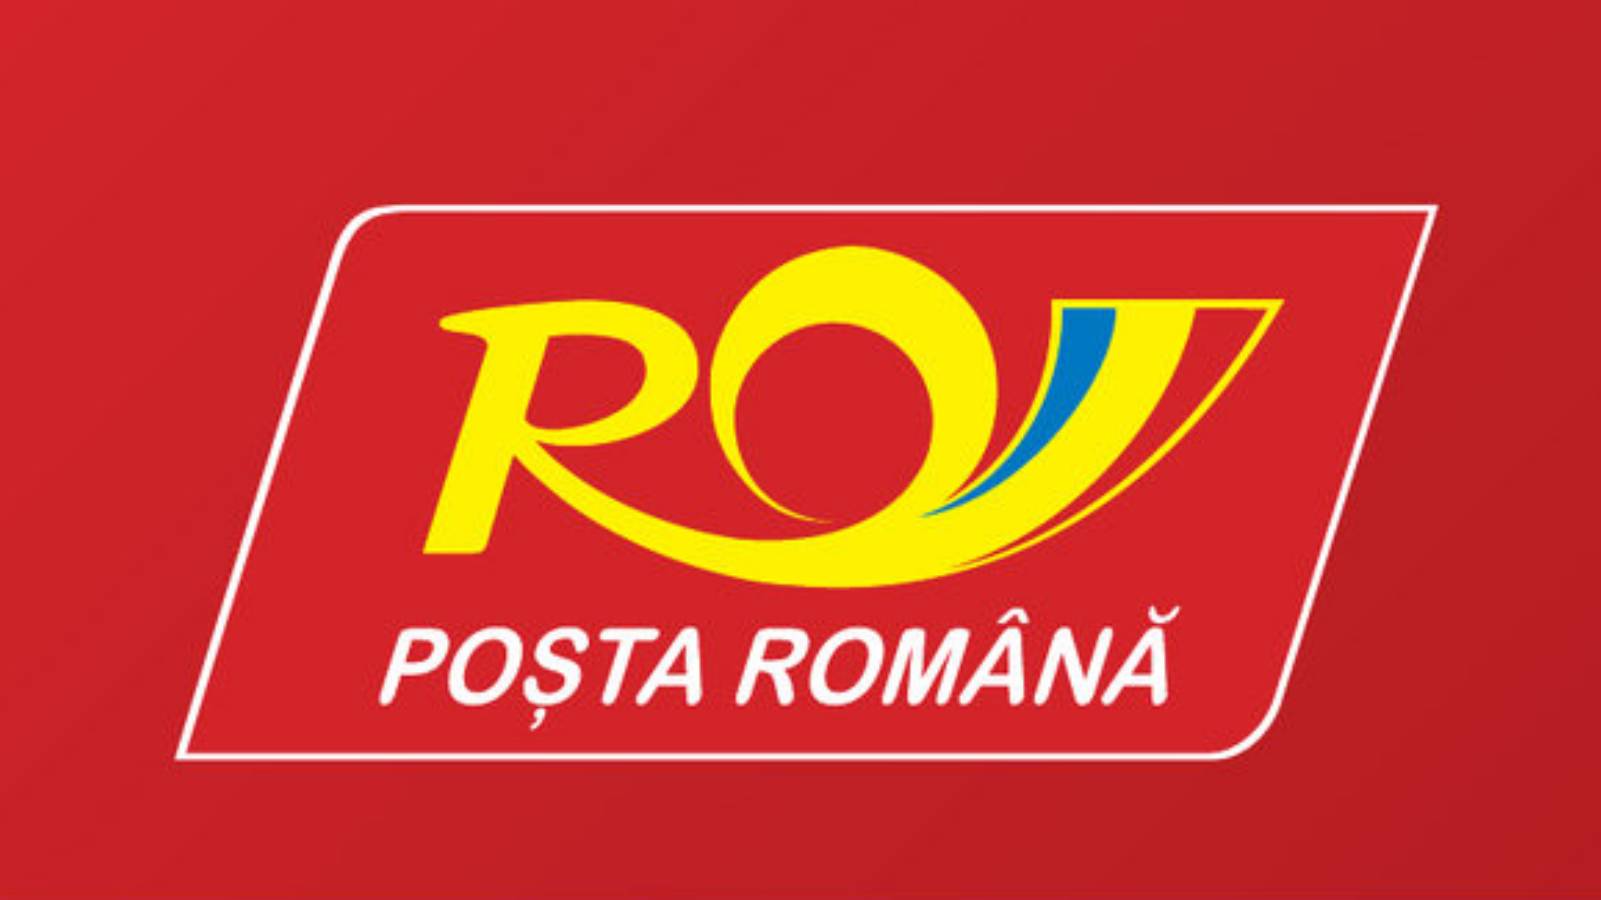 Correo rumano El sorprendente mensaje que los rumanos no conocían